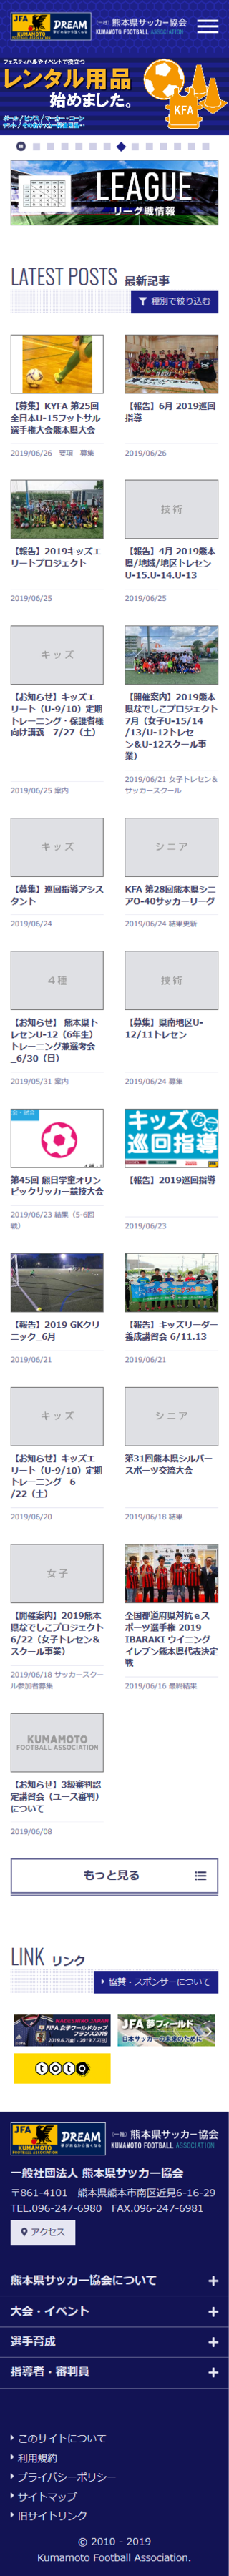 一般社団法人 熊本県サッカー協会のスマートフォン画面